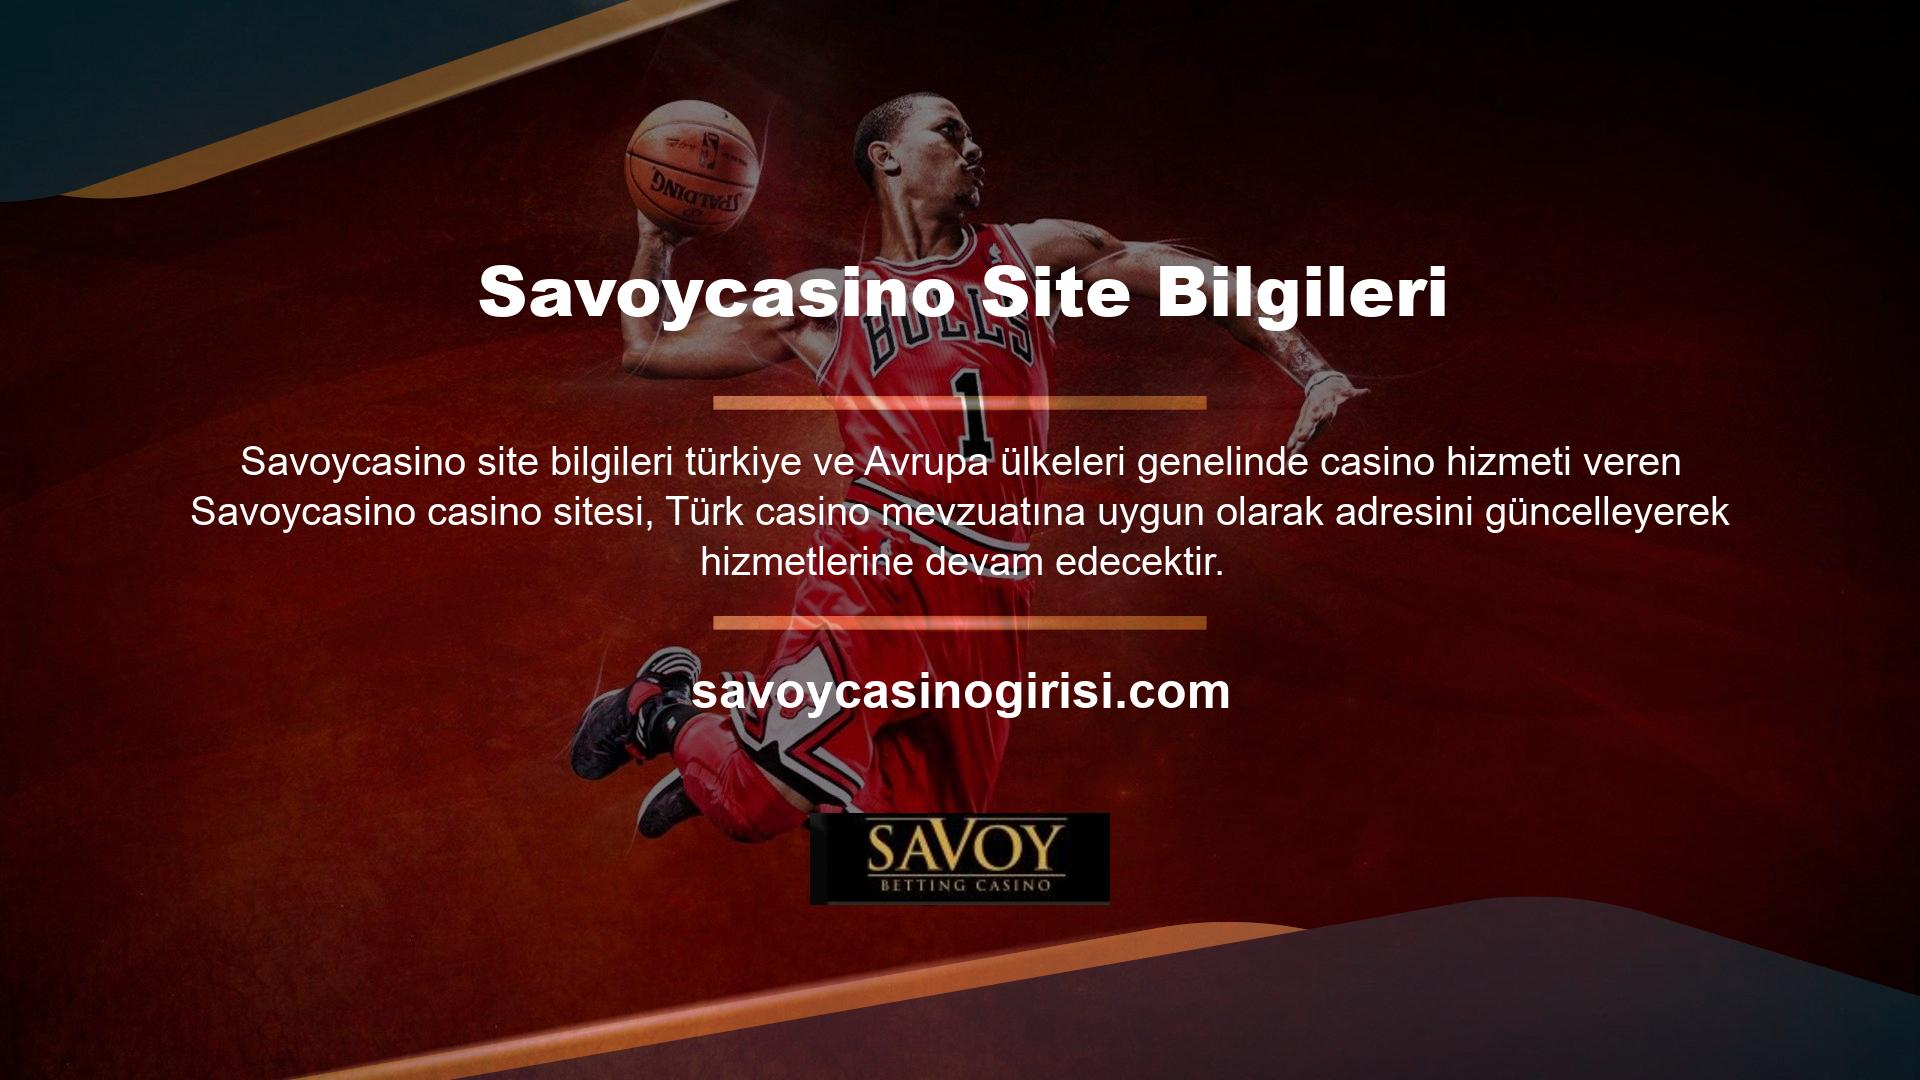 Savoycasino Quickspin casino oyunlarını oynamak isteyen Türk kullanıcılar, yeni giriş adreslerini kullanarak istedikleri oyunlara erişebilir ve seçebilirler